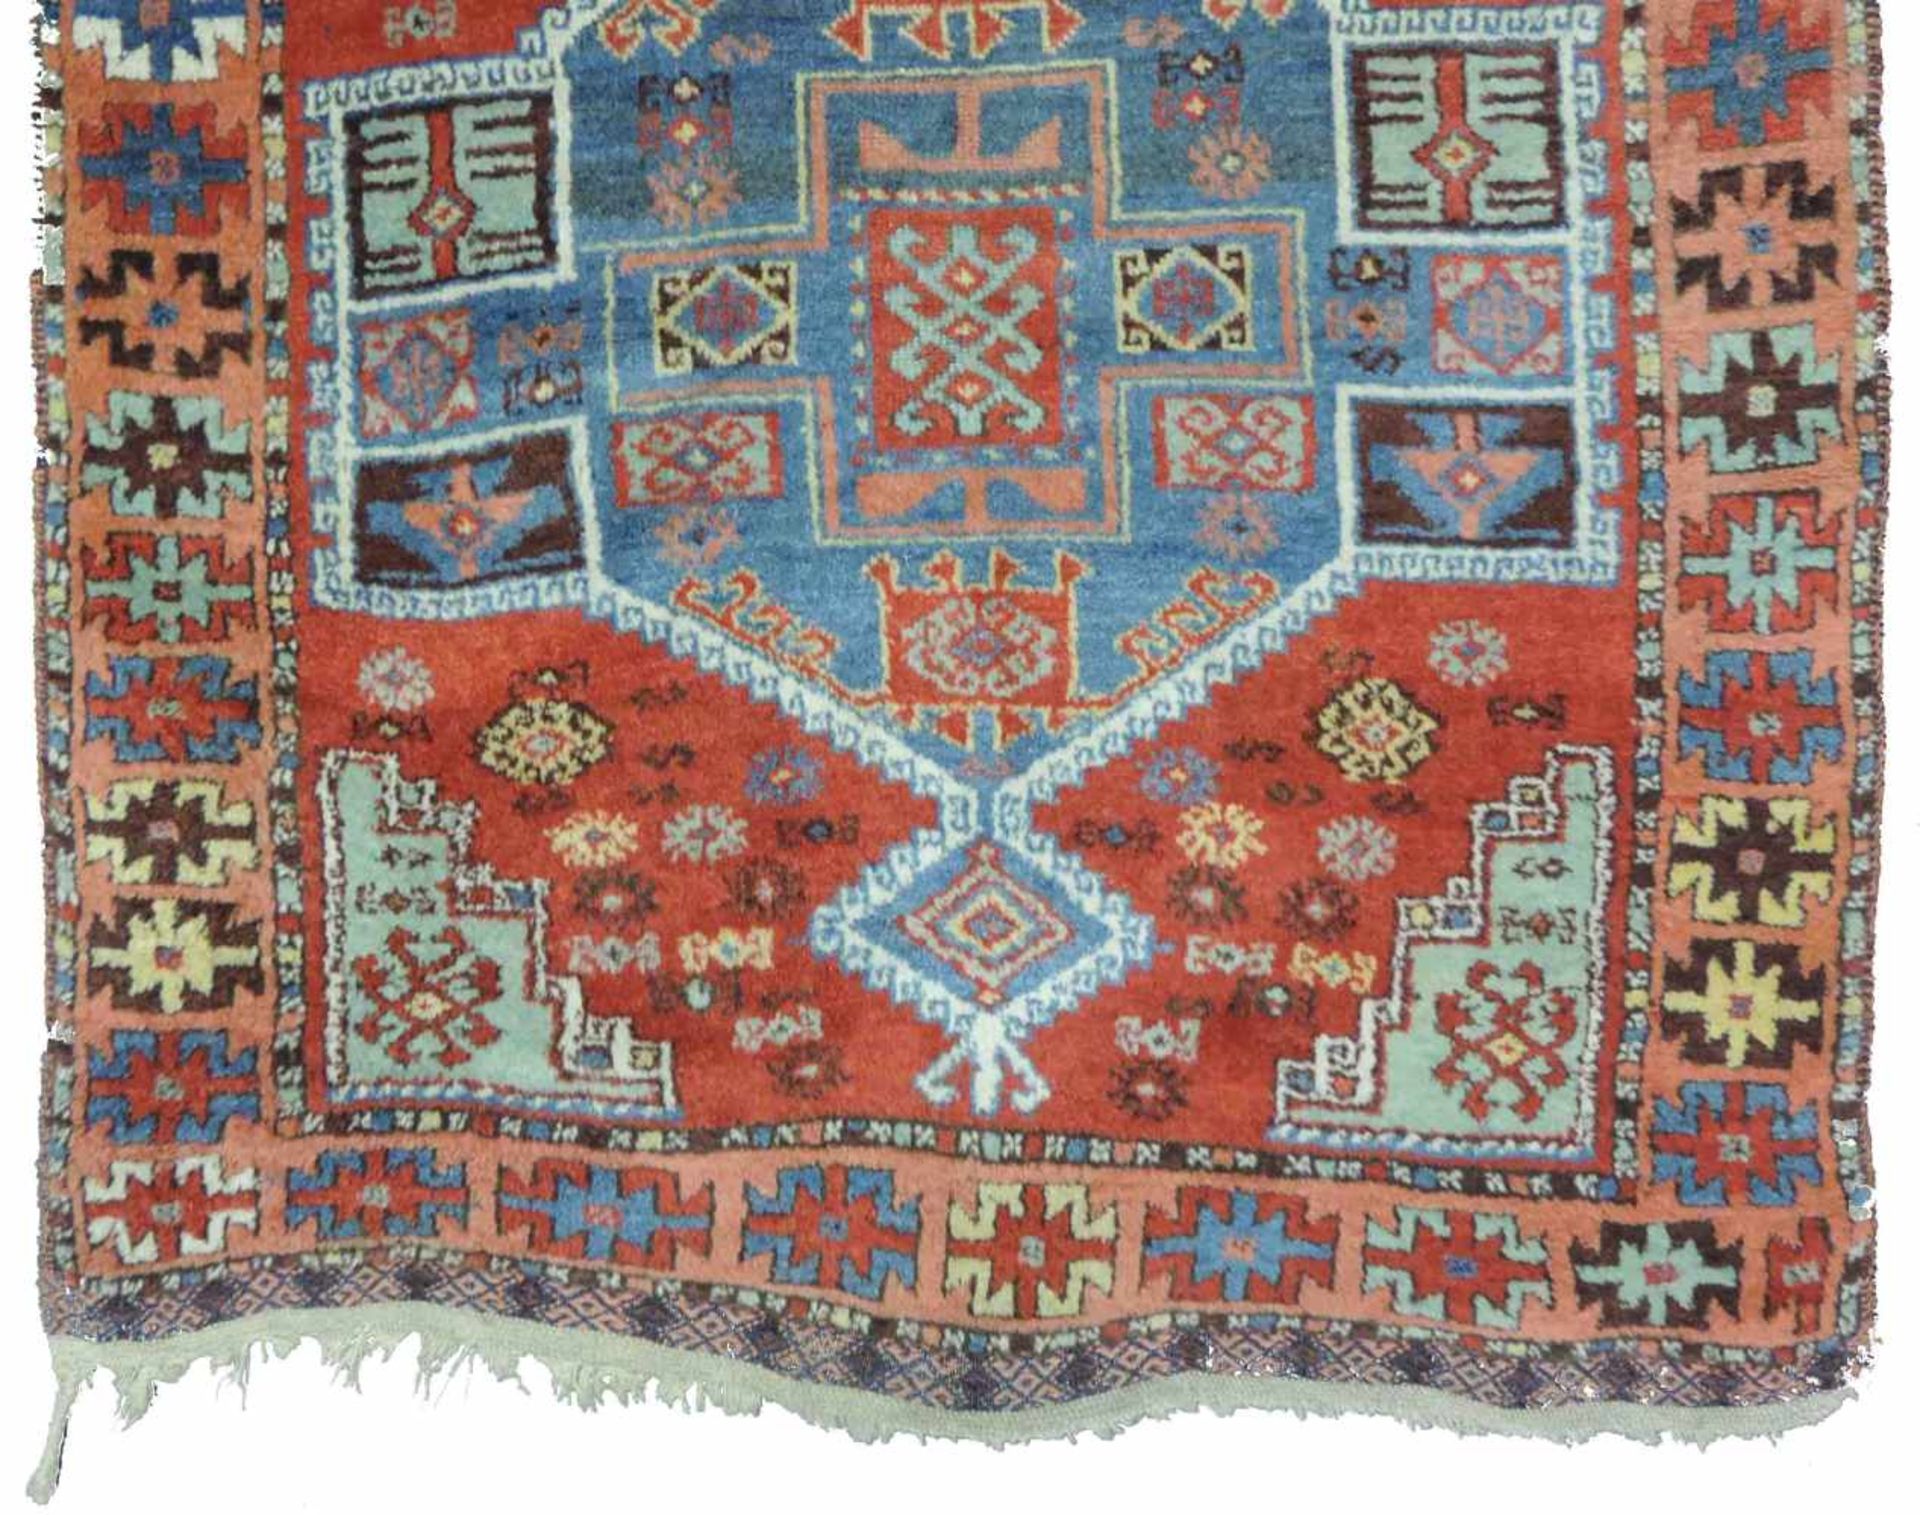 Yürük Stammesteppich. Ost - Anatolien. Türkei. Antik, um 1850 oder früher. 224 cm x 105 cm. - Bild 2 aus 6